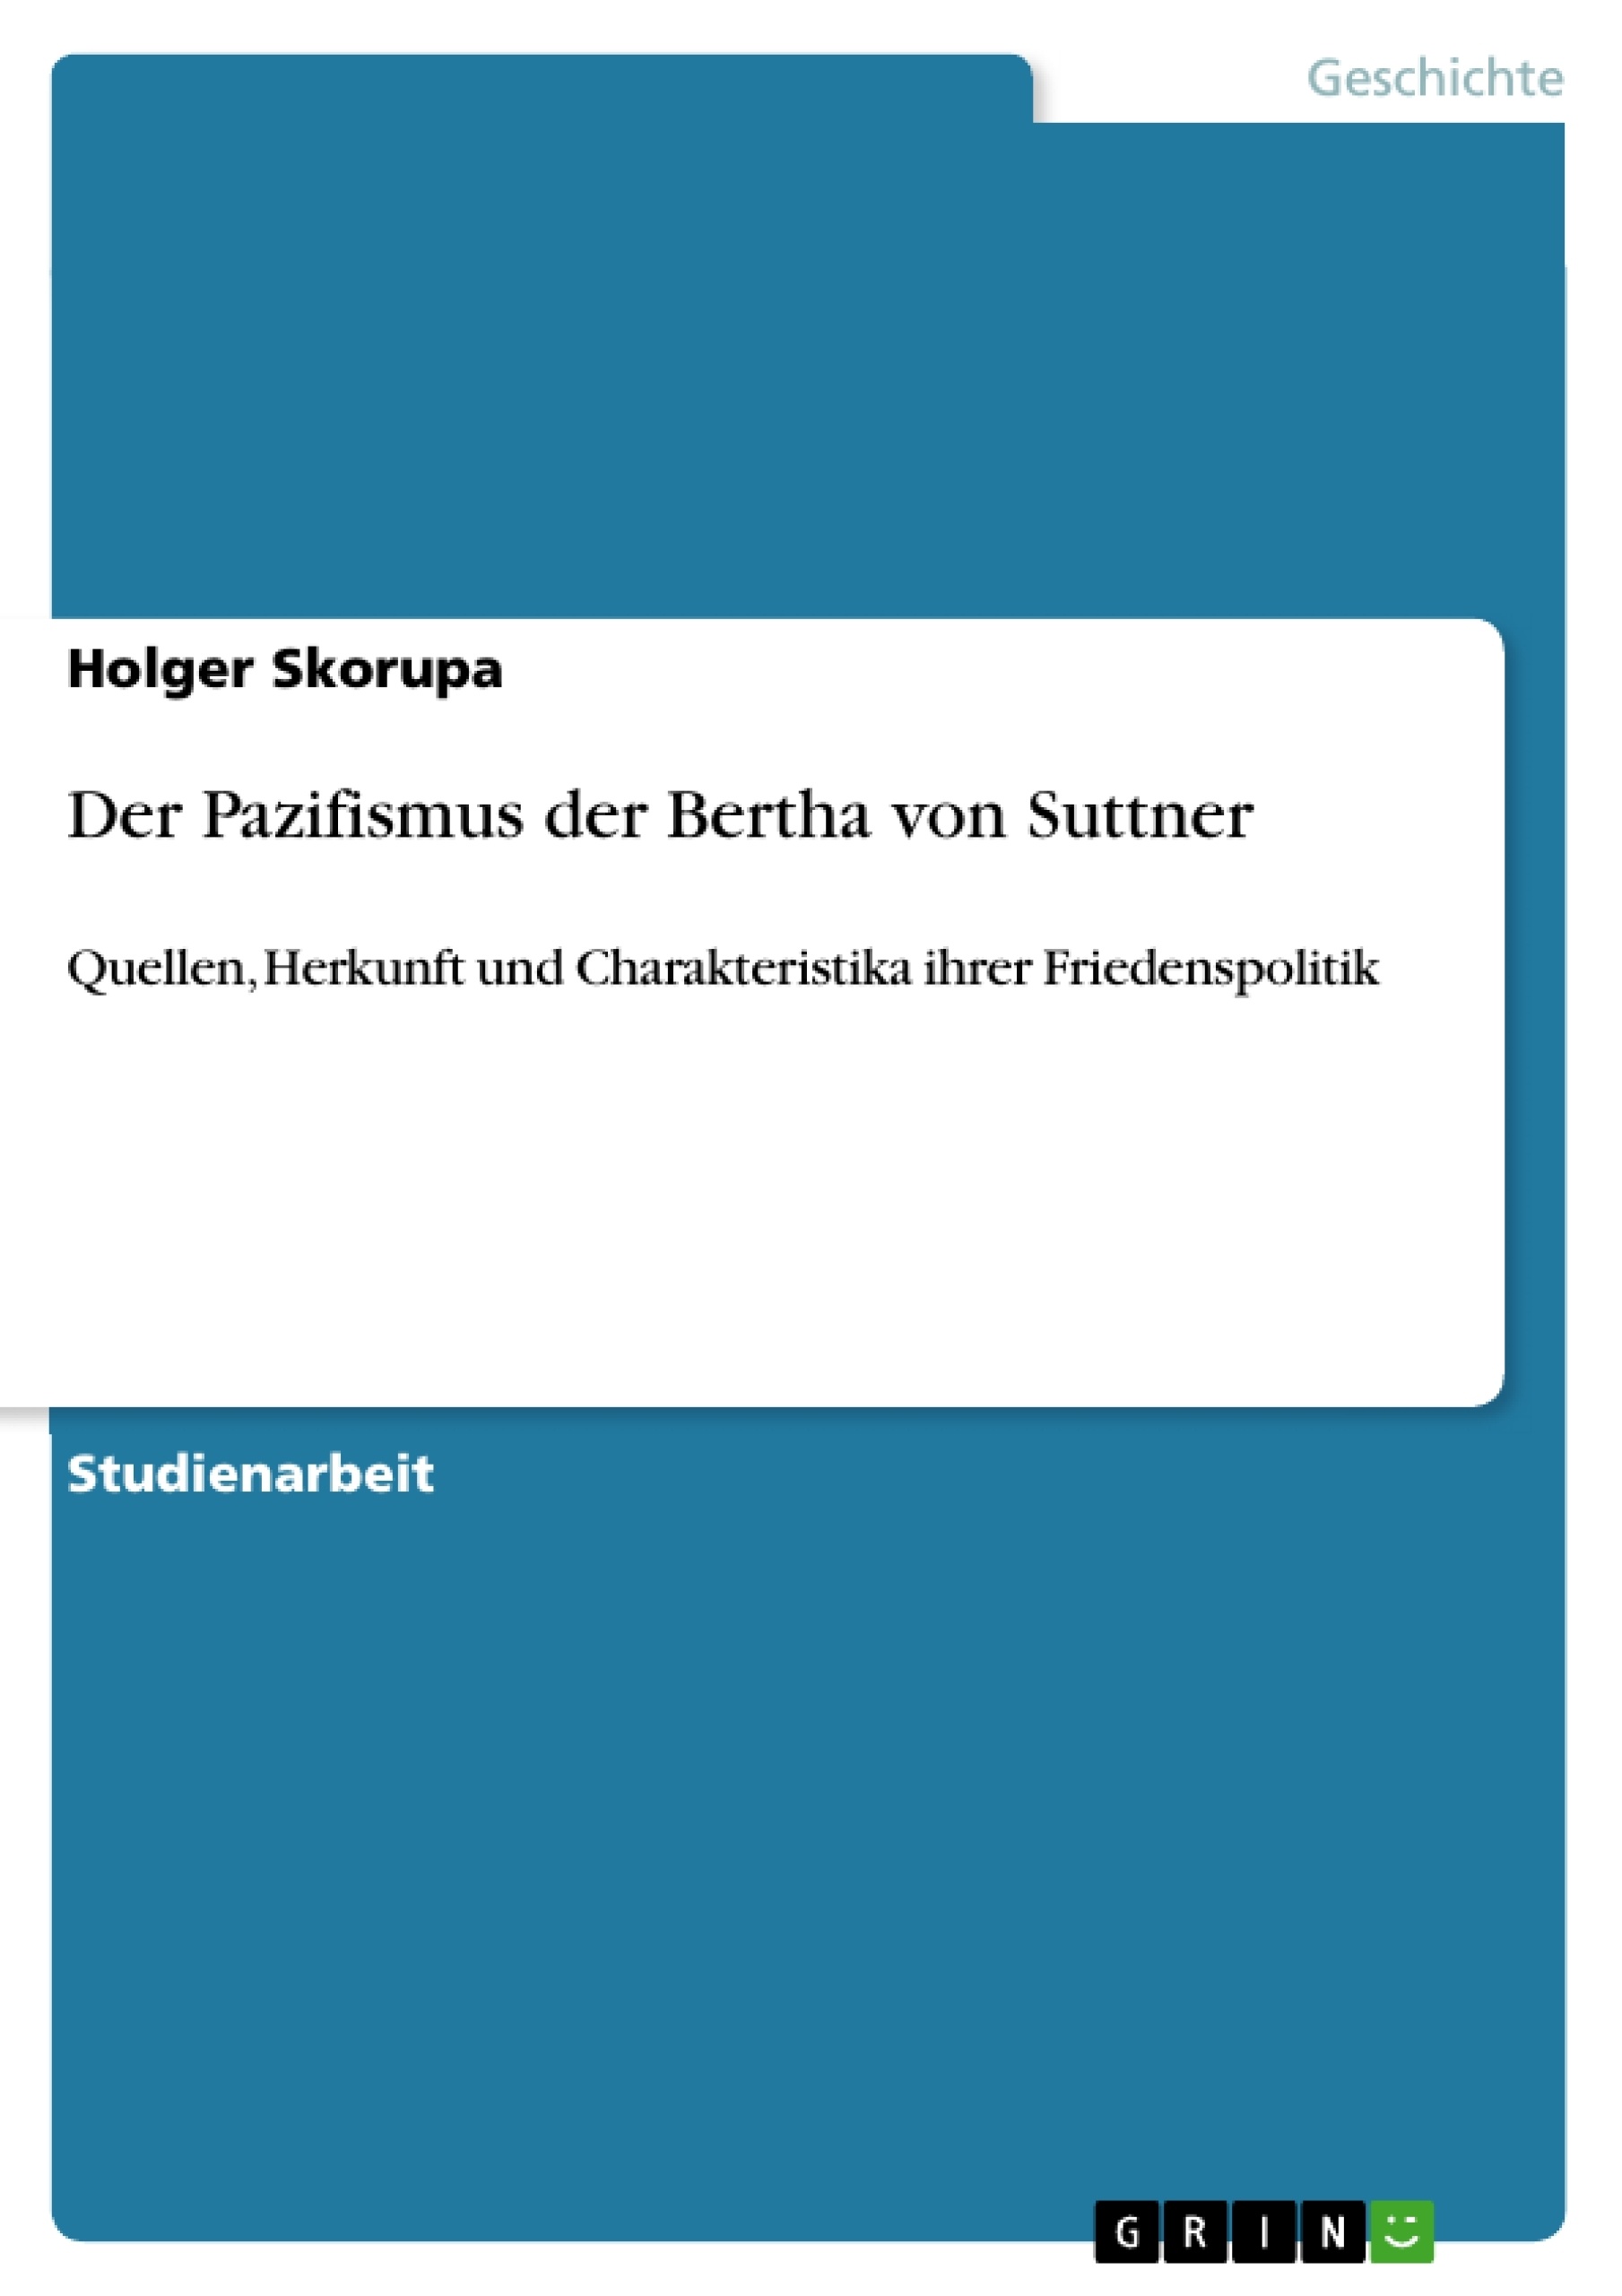 Título: Der Pazifismus der Bertha von Suttner 